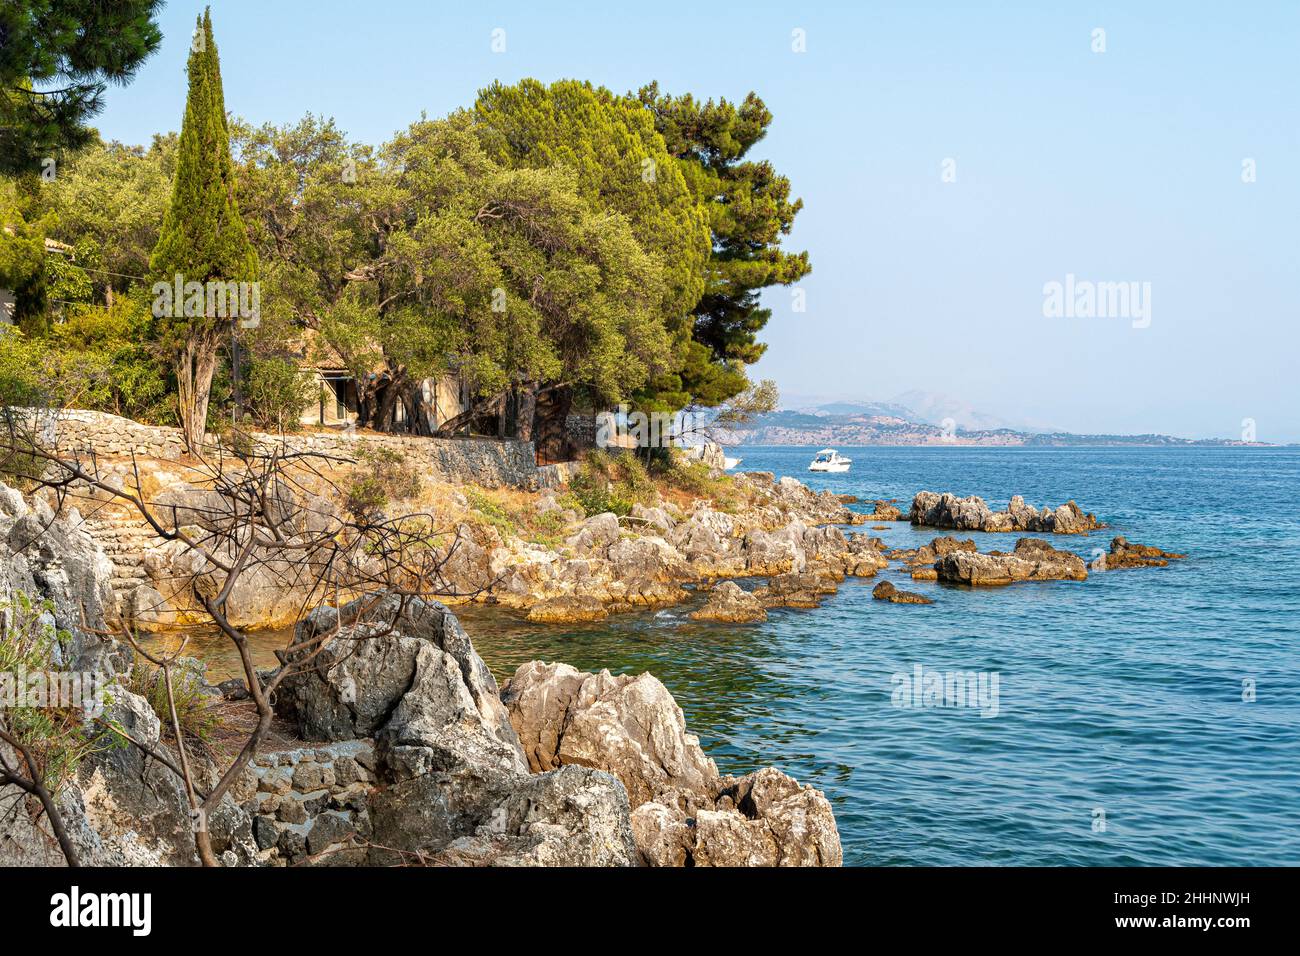 Ionian sea and coast  in Nissaki Kerkyra, in the Island of Corfu Ionian Islands Greece, Europe Stock Photo